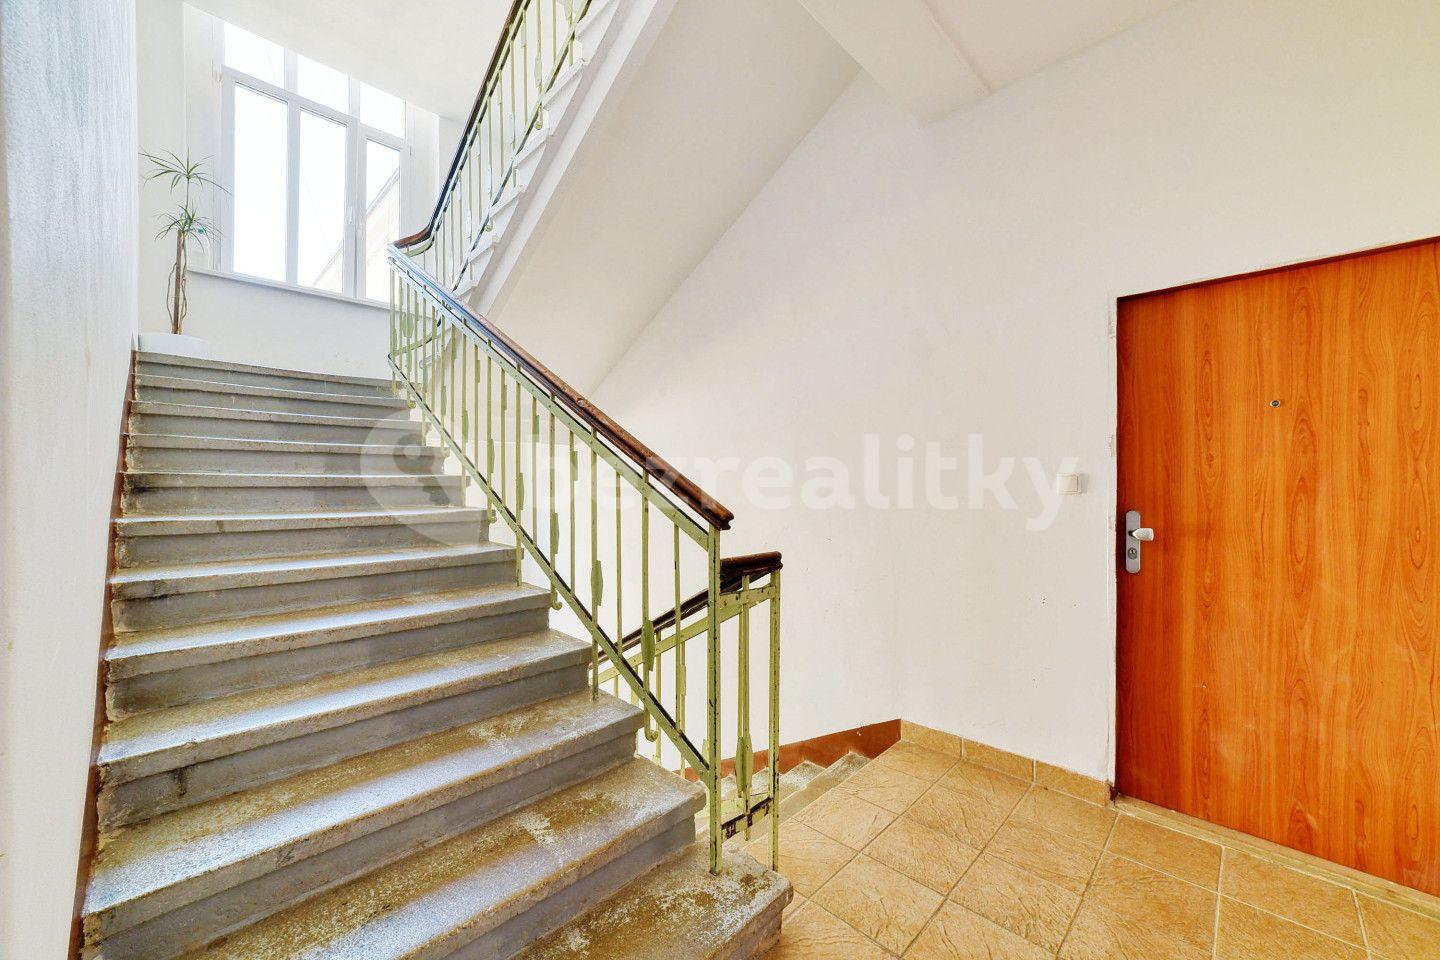 1 bedroom with open-plan kitchen flat for sale, 68 m², Husova, Mariánské Lázně, Karlovarský Region